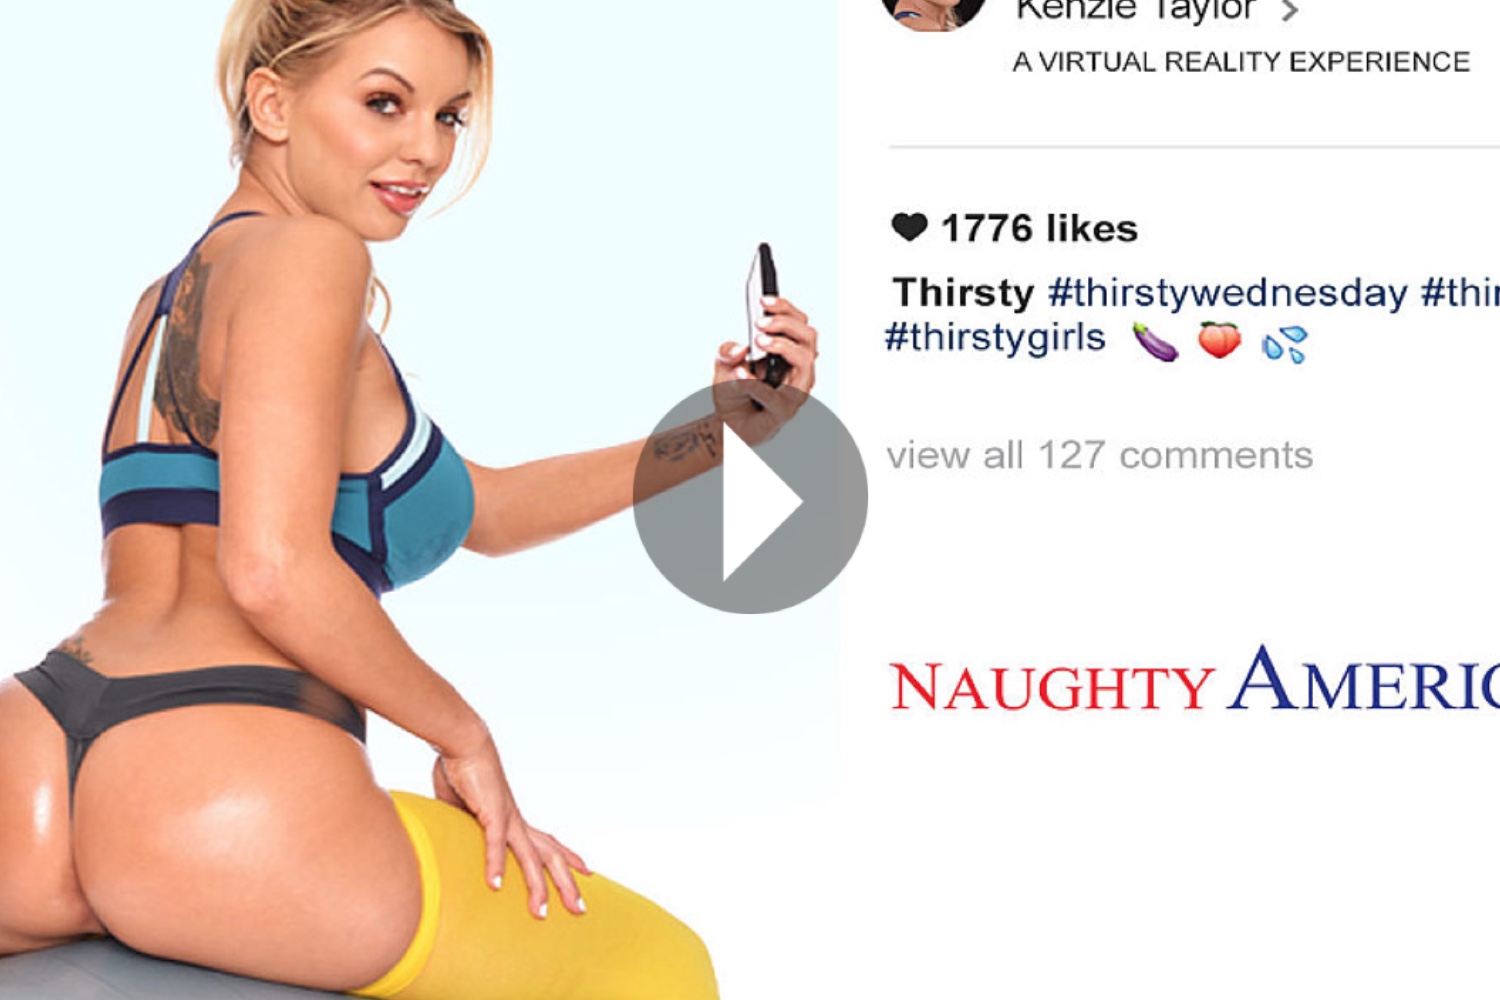 Kenzie Taylor - Naughty America VR - Kenzie Taylor VR Porn - Kenzie Taylor Virtual Reality Porn